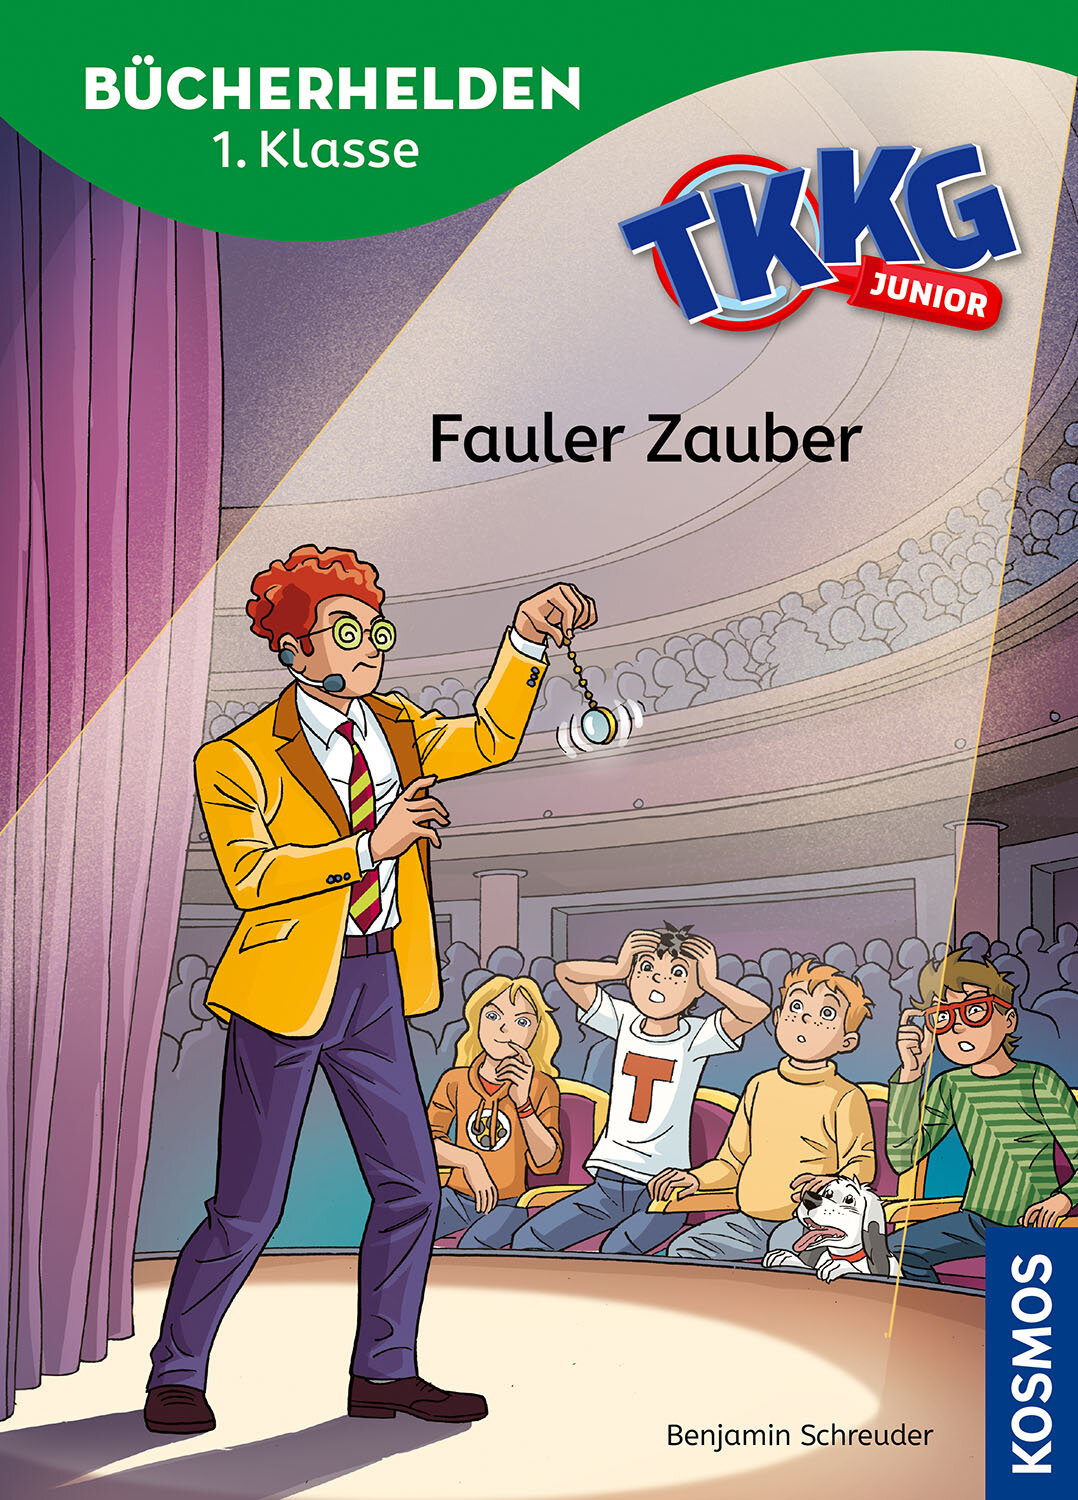 TKKG Junior  Bücherhelden 1. Klasse  Fauler Zauber